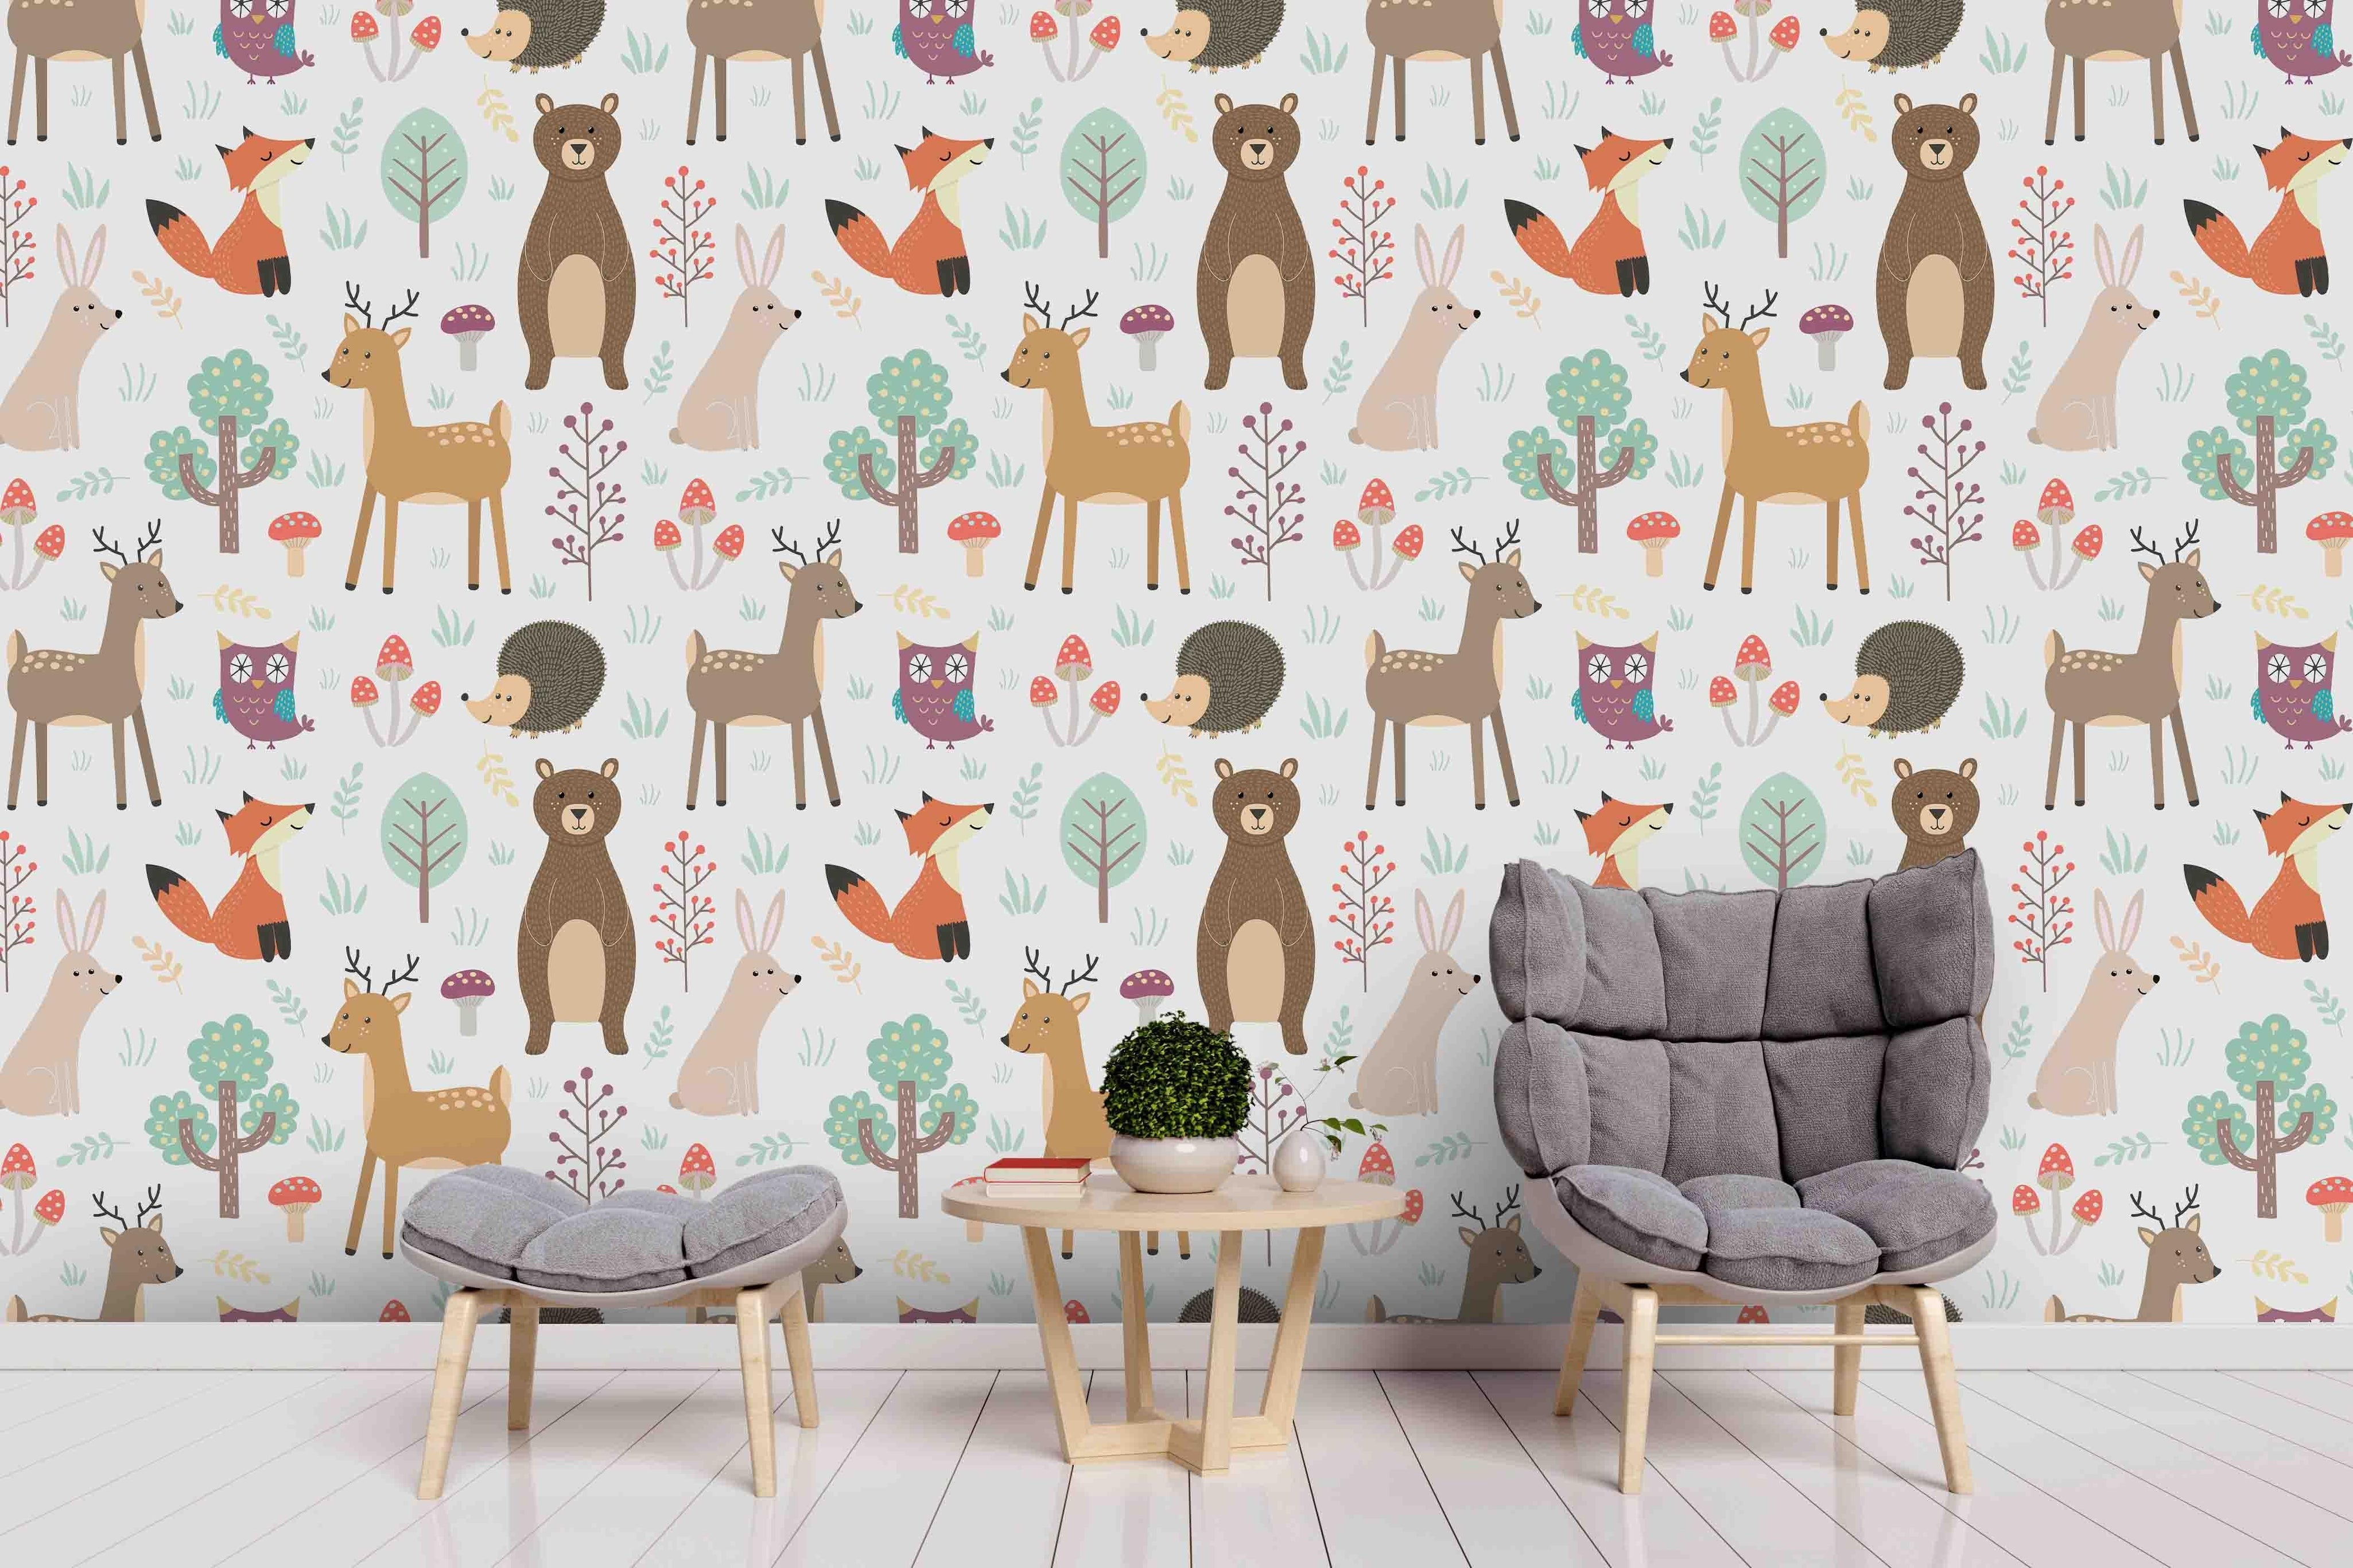 3D Cartoon Forest Animals Hedgehog Fox Deer Bear Rabbit Wall Mural Wallpaper ZY D21- Jess Art Decoration